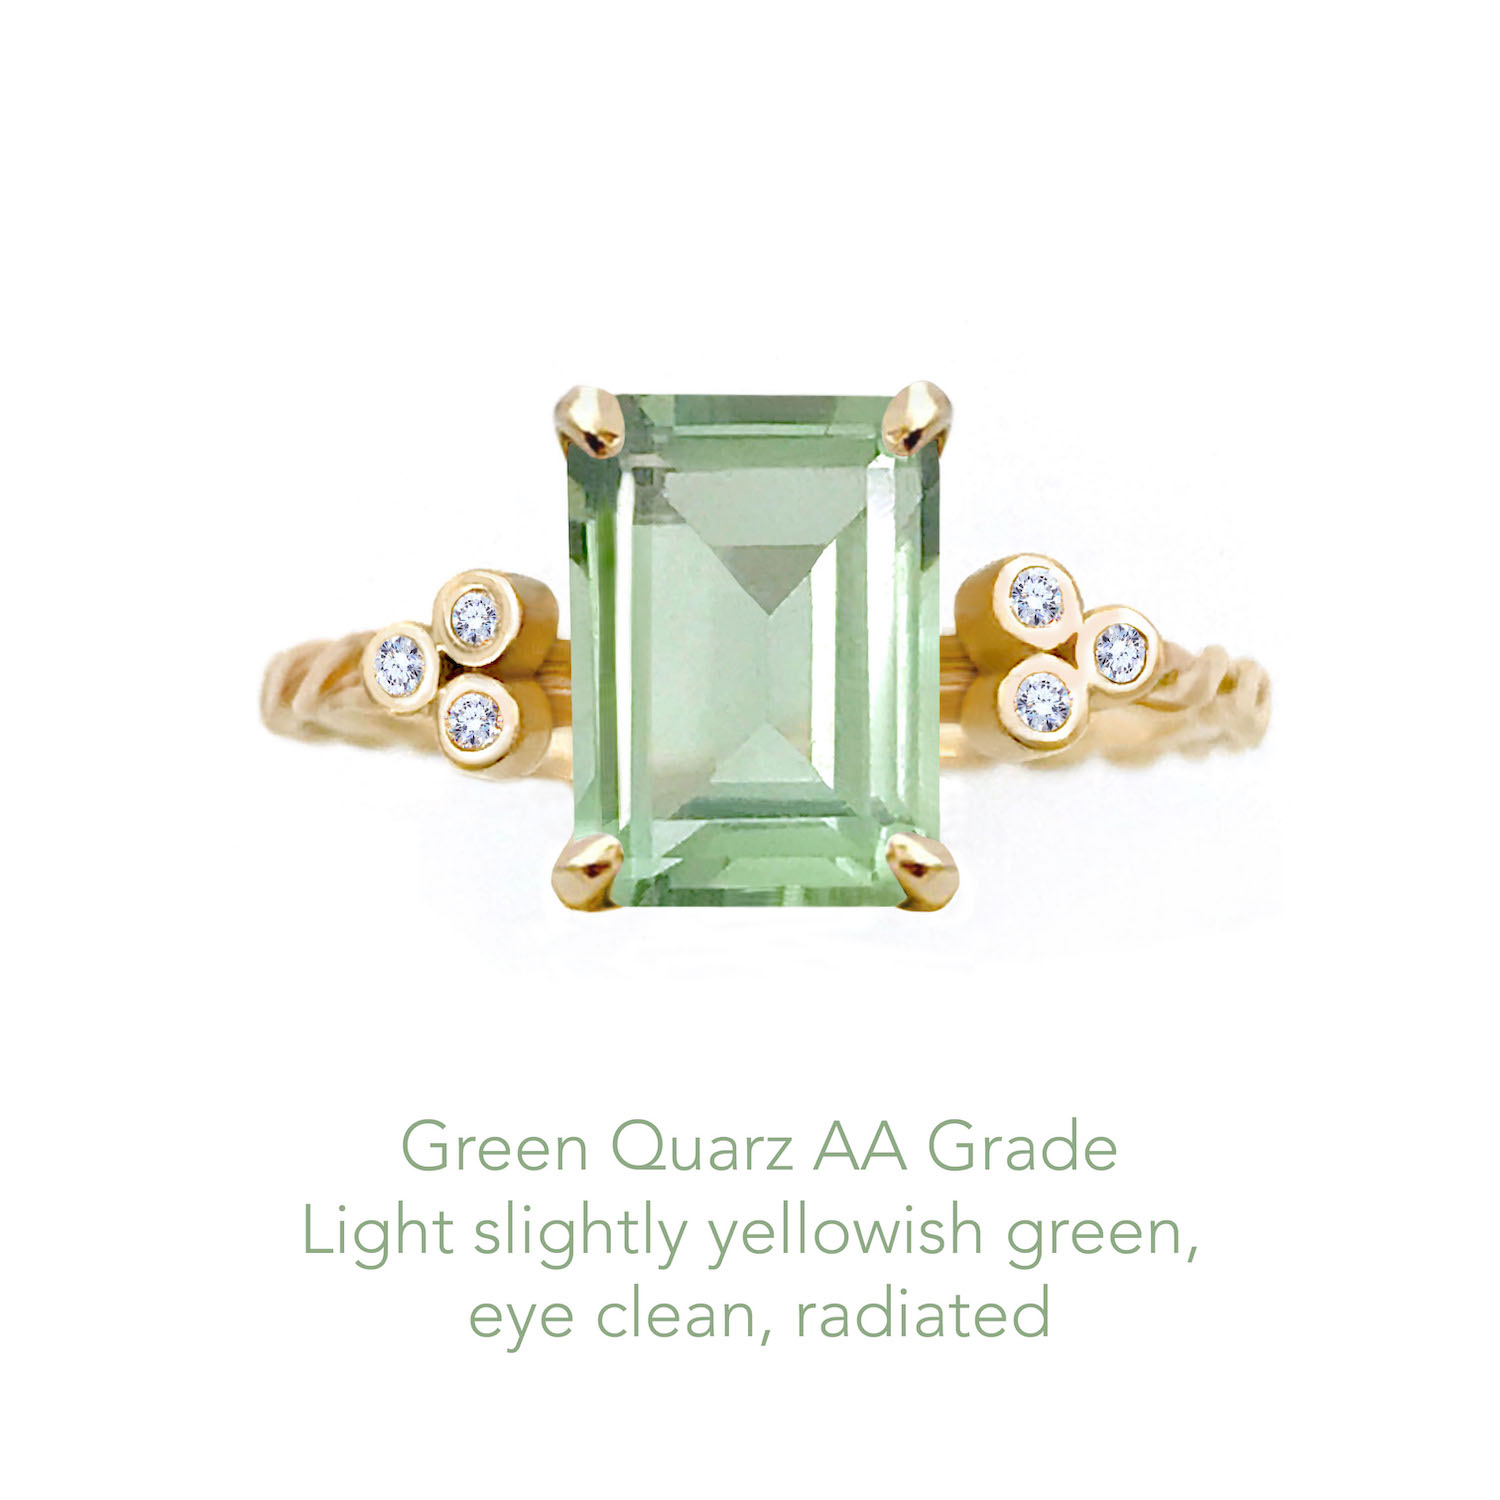 Green Quartz AA copy